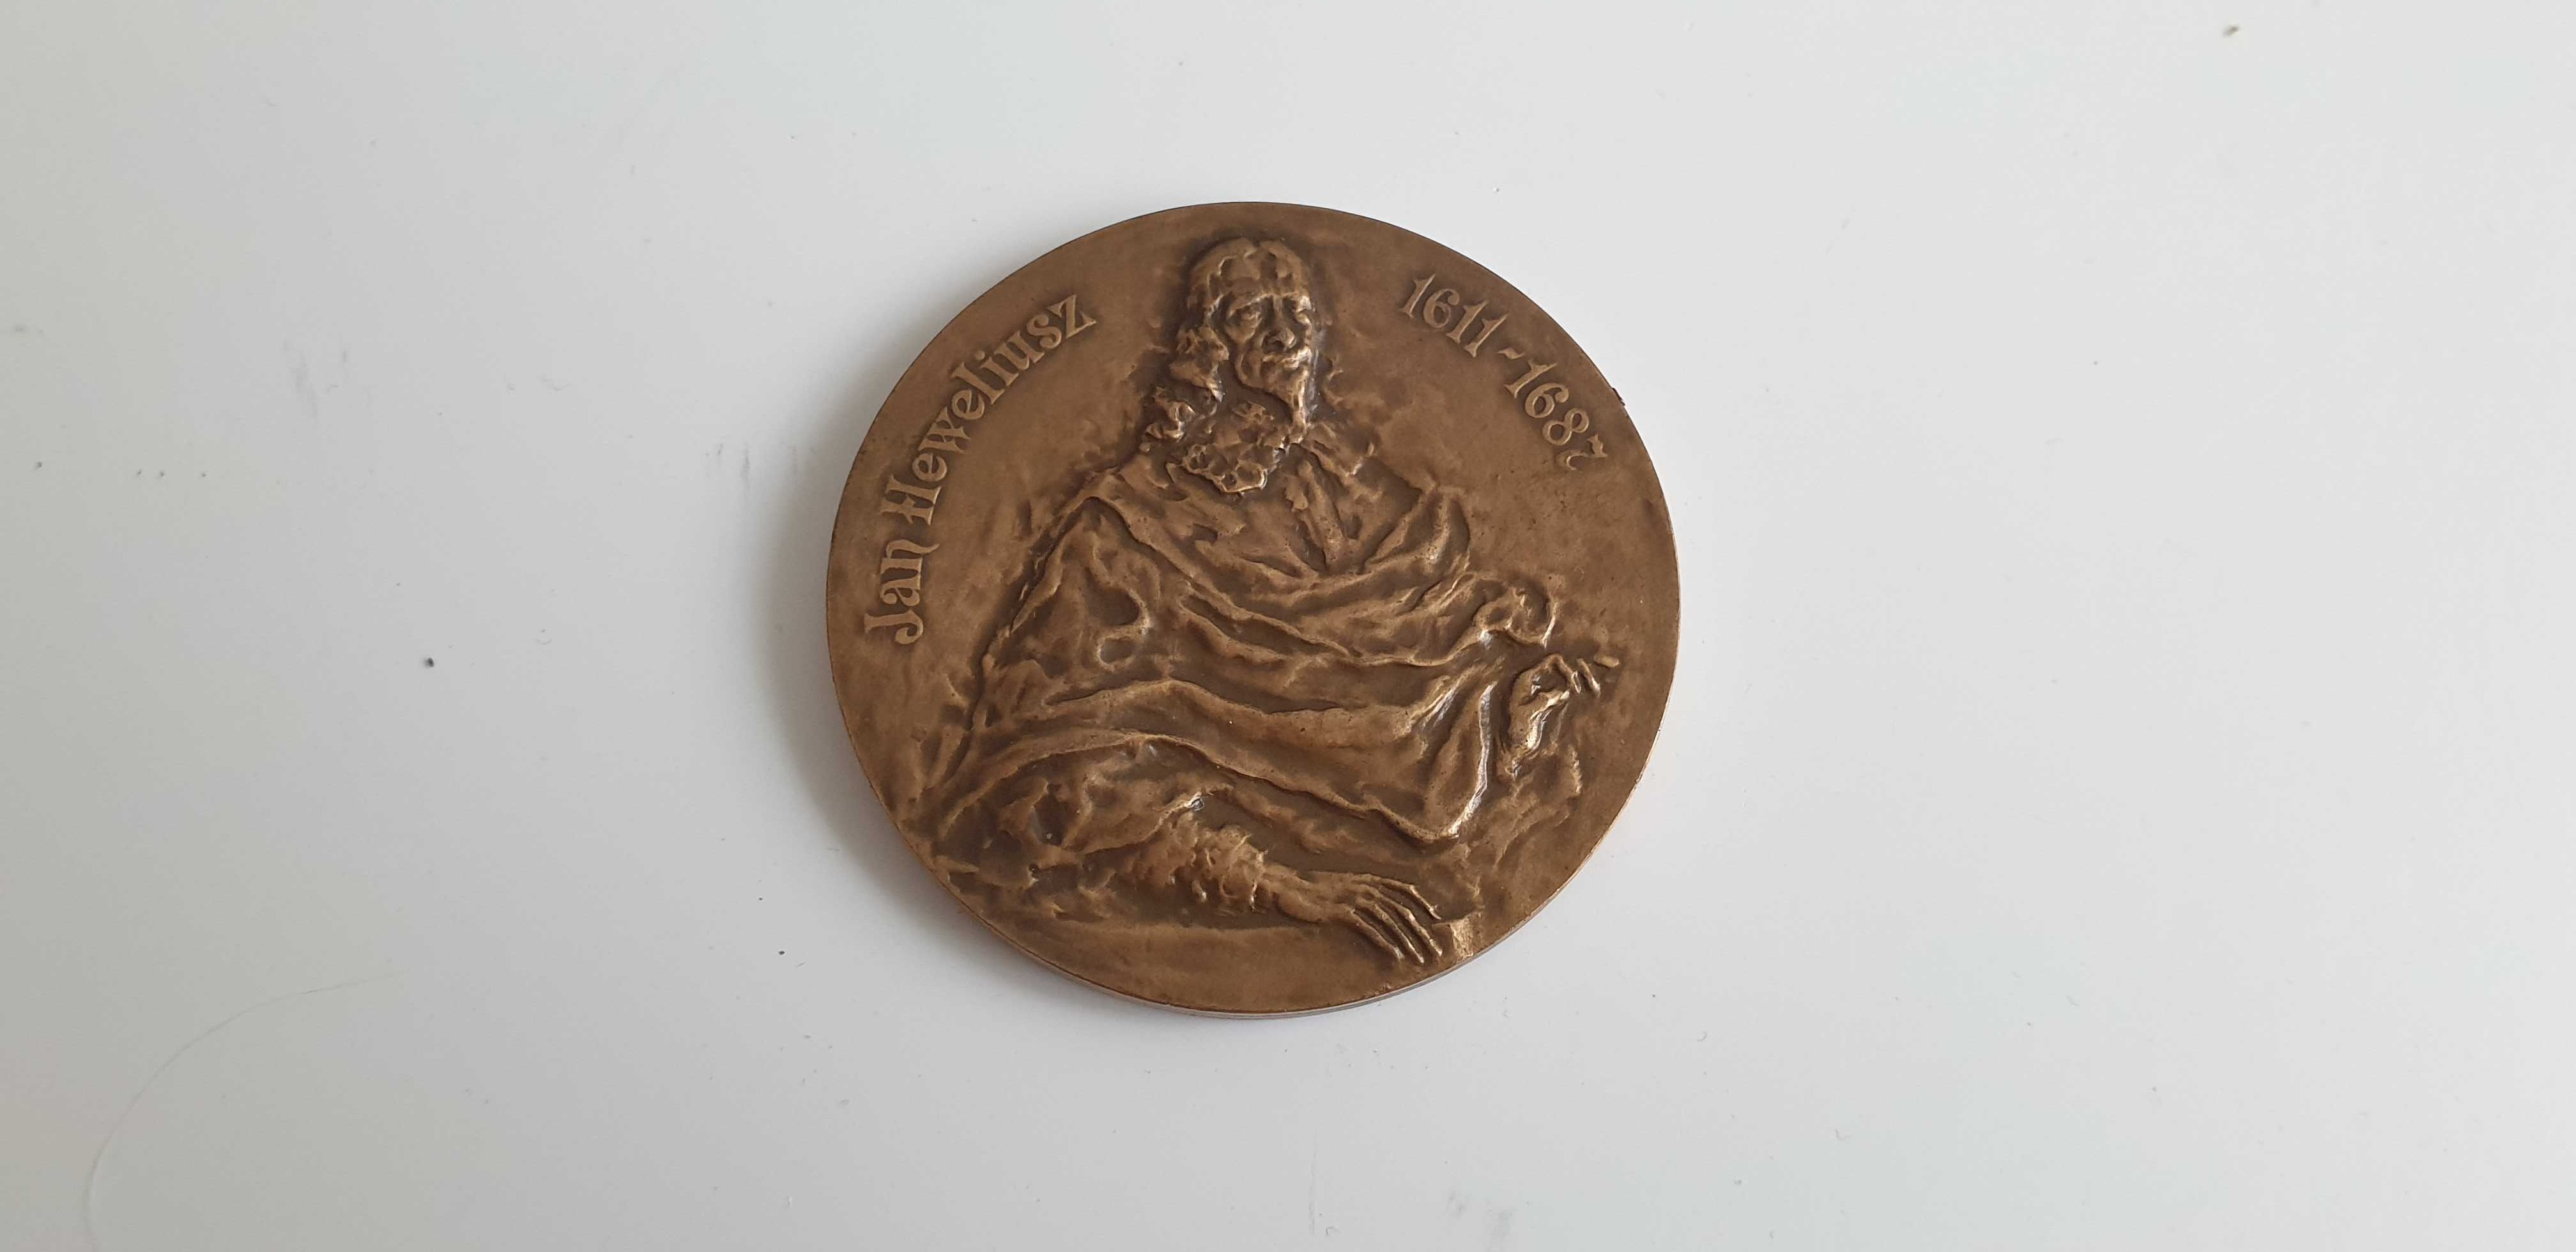 Starocie z Gdyni - Medal Polski numer 4 do rozpoznania